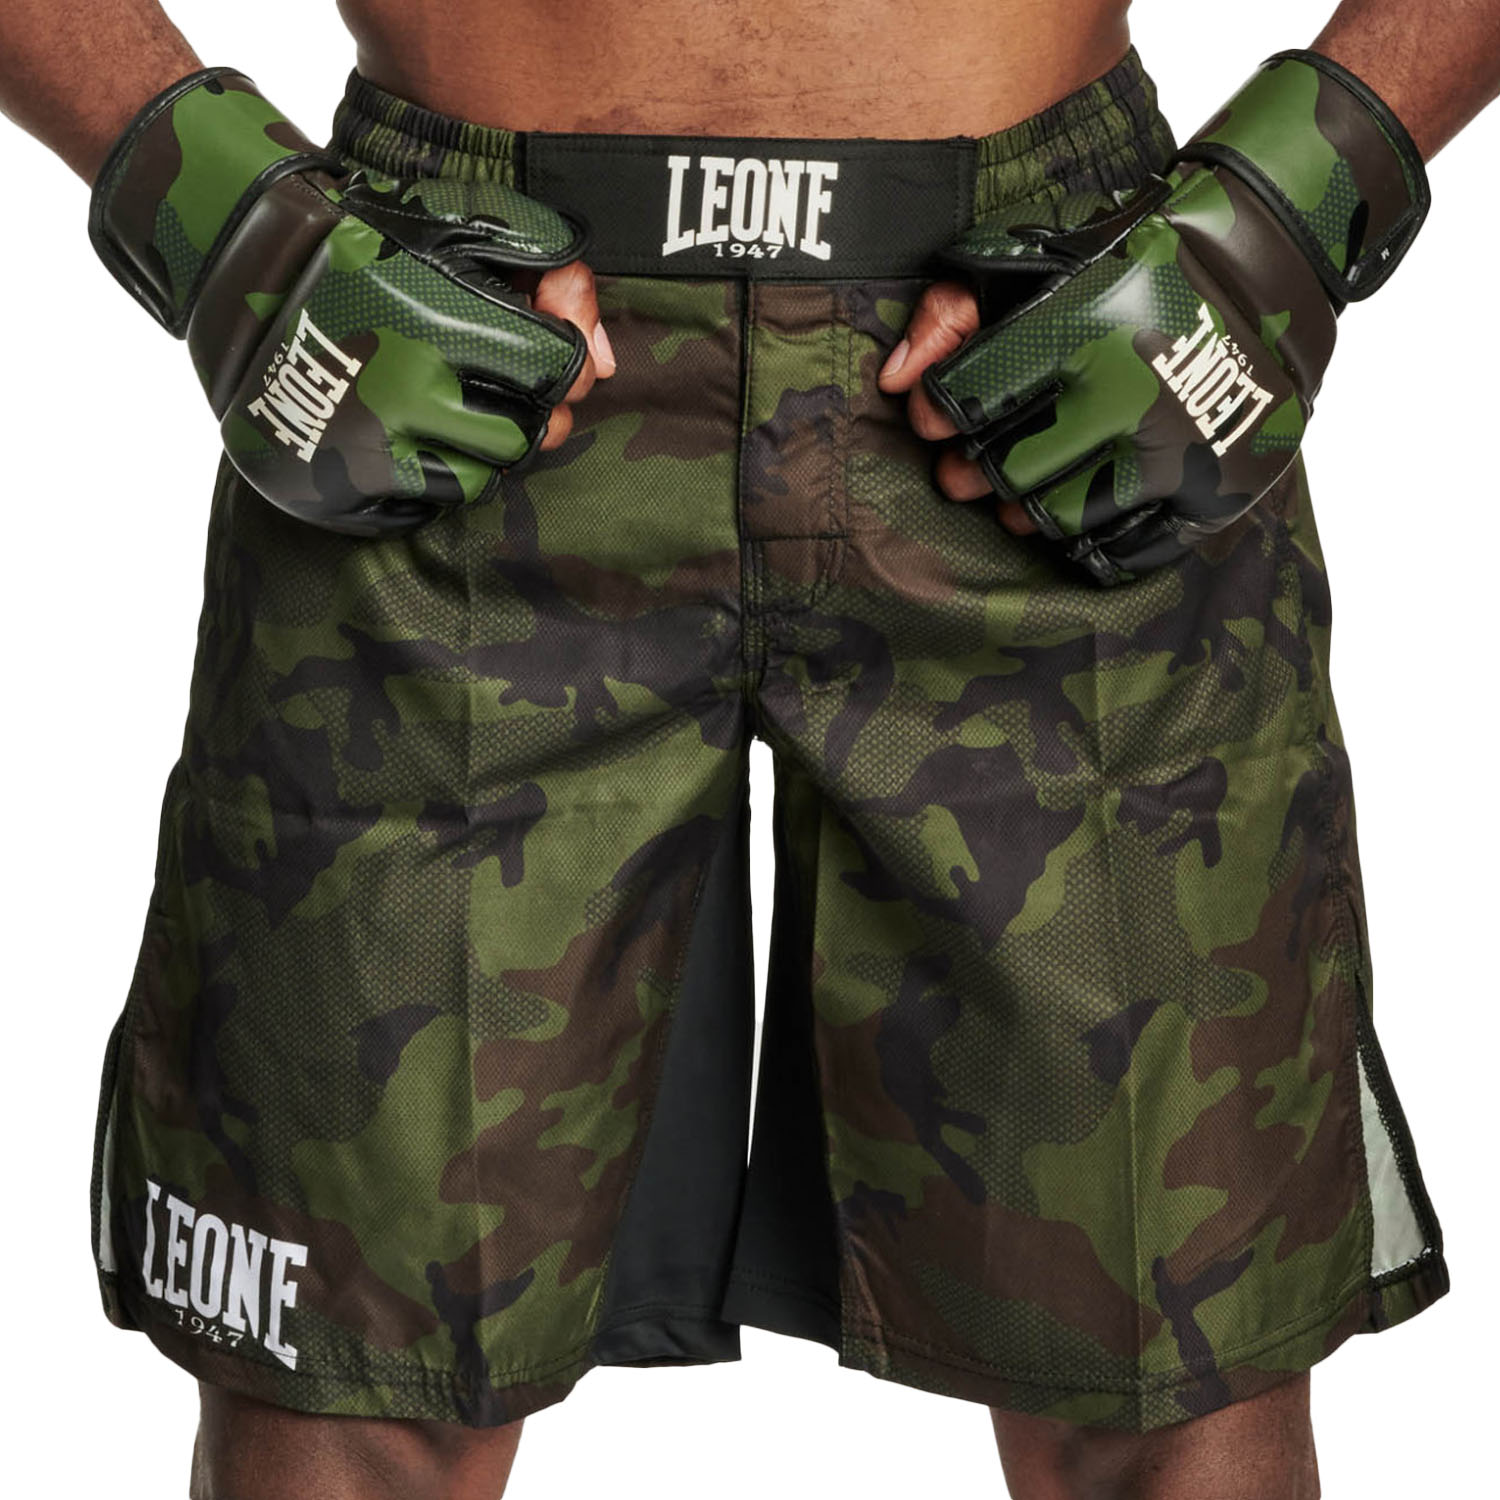 LEONE MMA Fight Shorts, AB954, camo-green, S